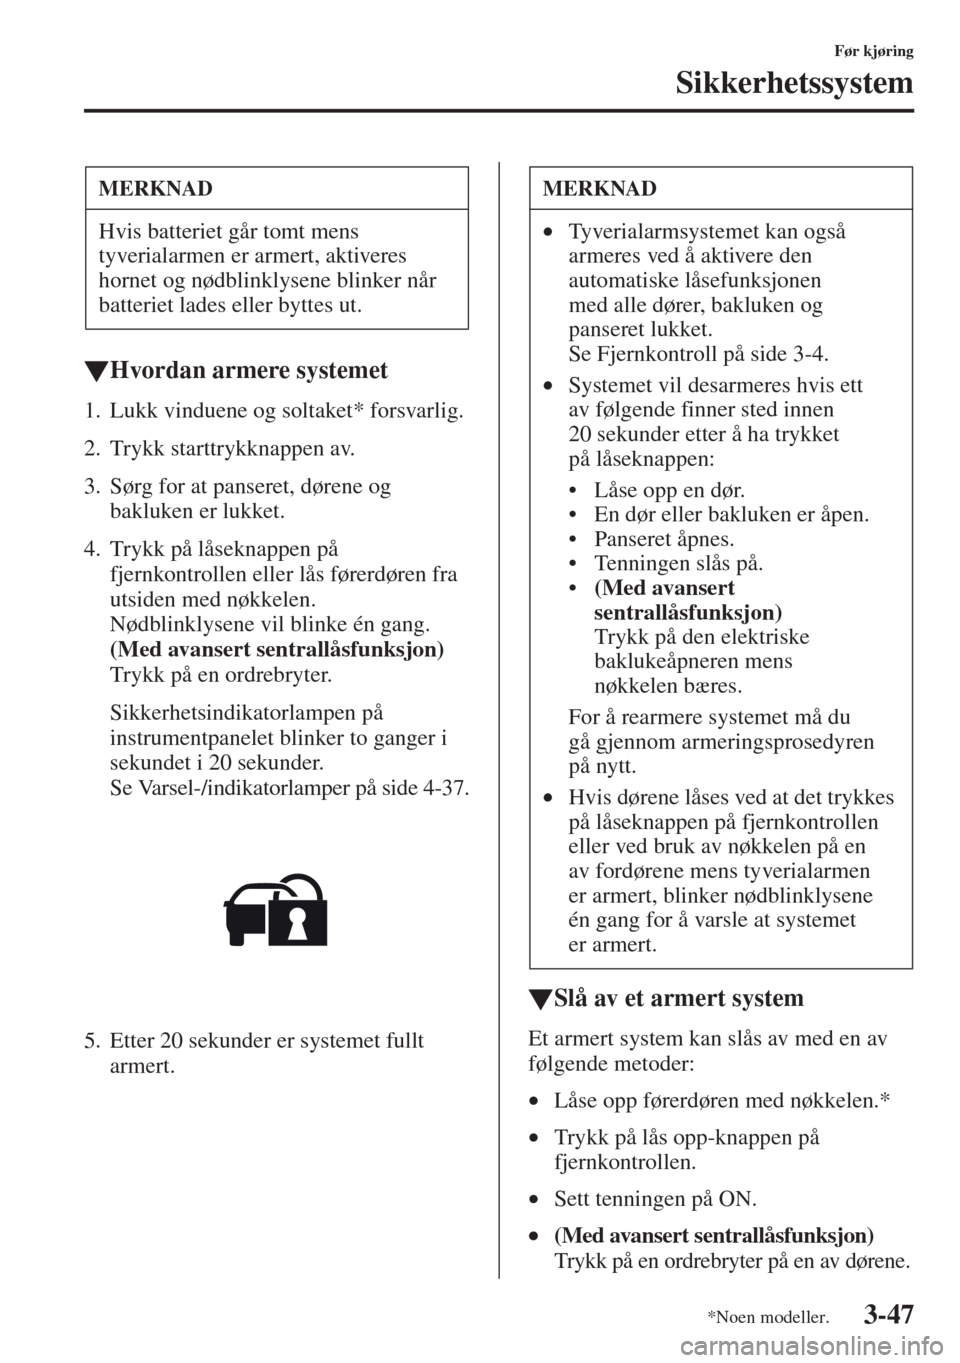 MAZDA MODEL CX-5 2013  Brukerhåndbok (in Norwegian) 3-47
Før kjøring
Sikkerhetssystem
tHvordan armere systemet
1. Lukk vinduene og soltaket* forsvarlig.
2. Trykk starttrykknappen av.
3. Sørg for at panseret, dørene og 
bakluken er lukket.
4. Trykk 